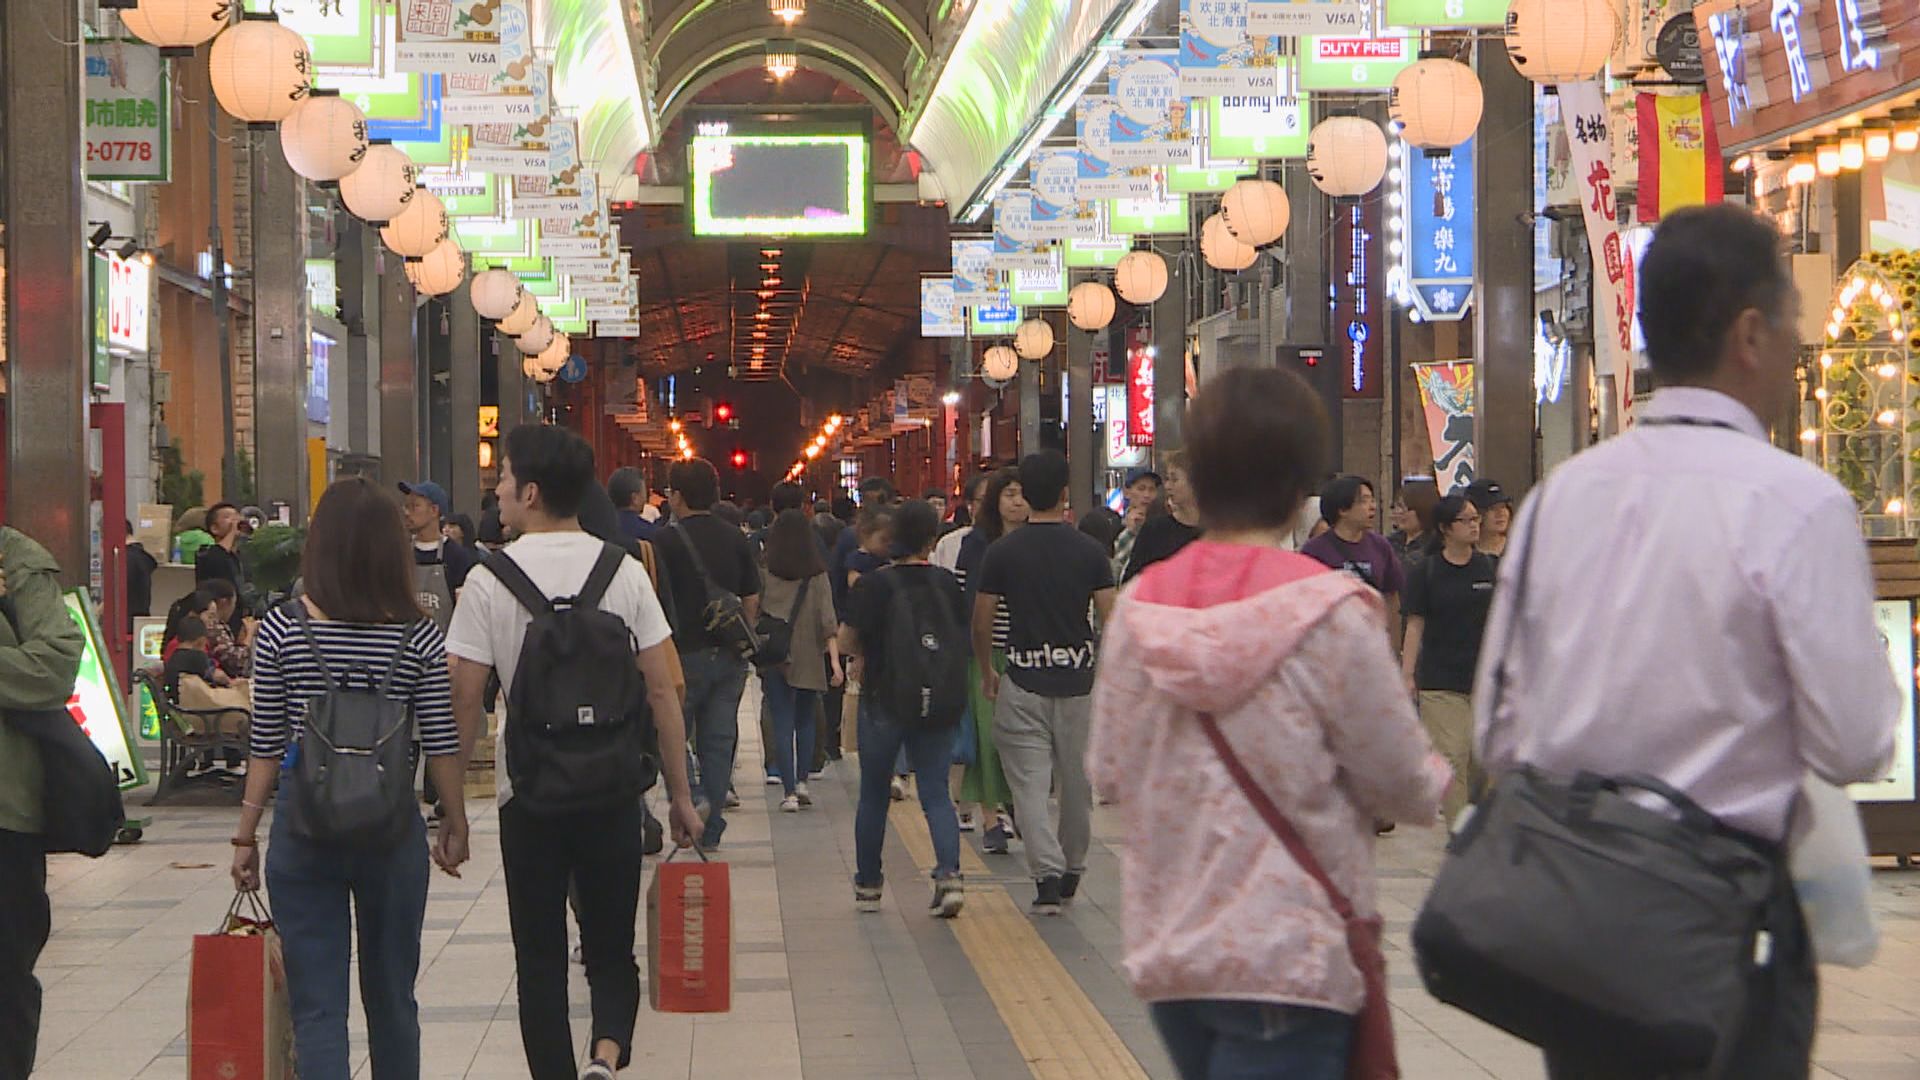 日本擬修改旅客免稅購物制度 進一步打擊境內轉售圖利問題